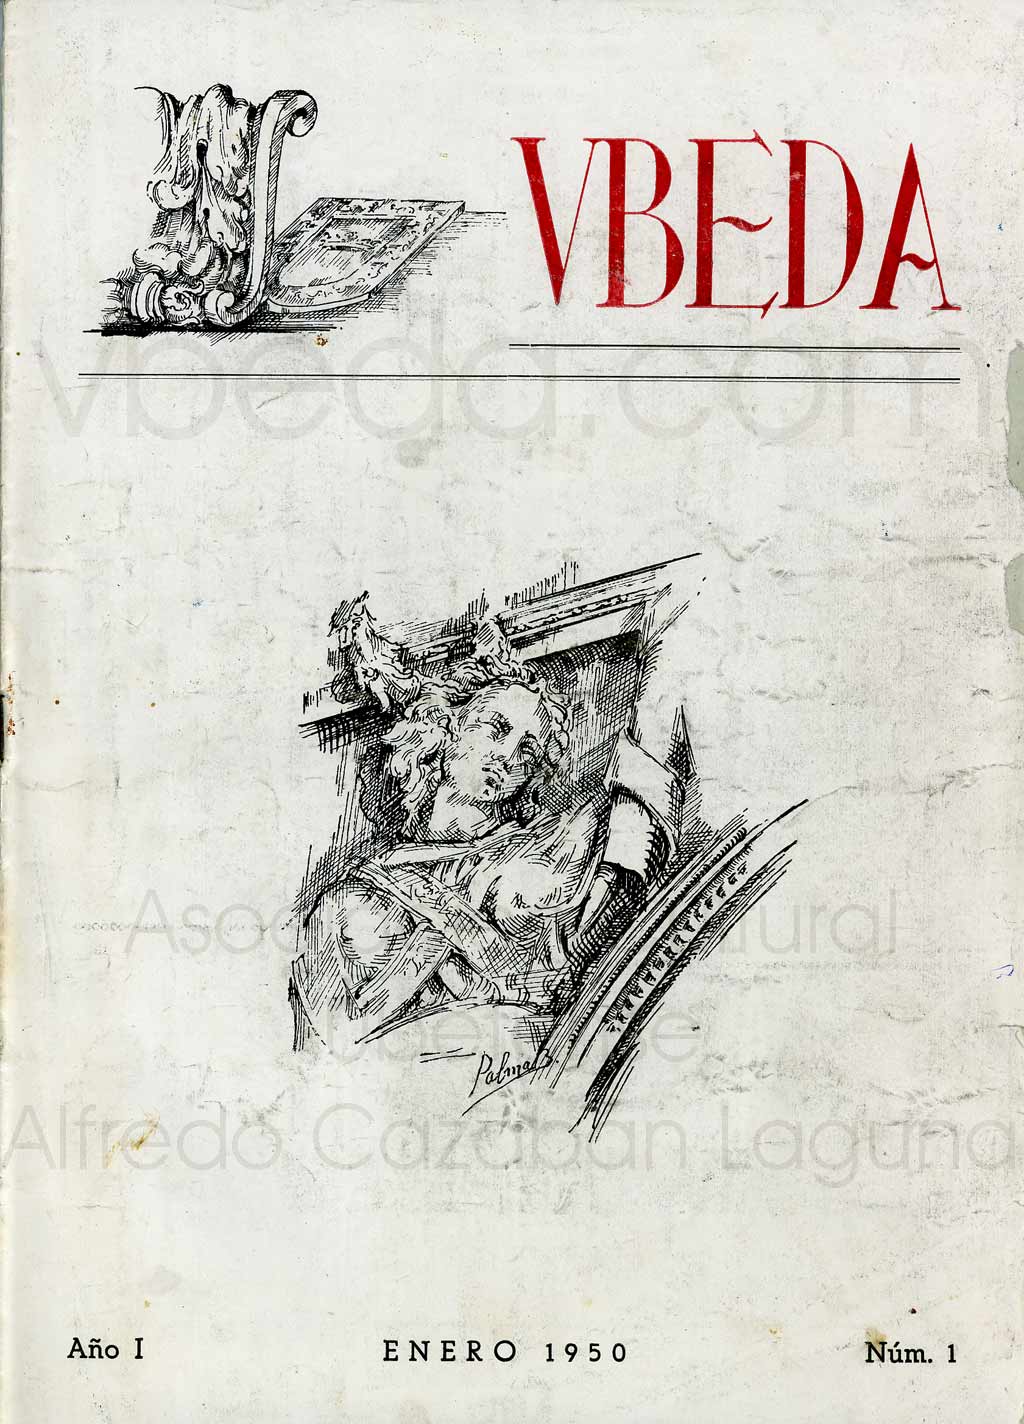 Revista Vbeda. Ao 1. N 1 de enero de 1950